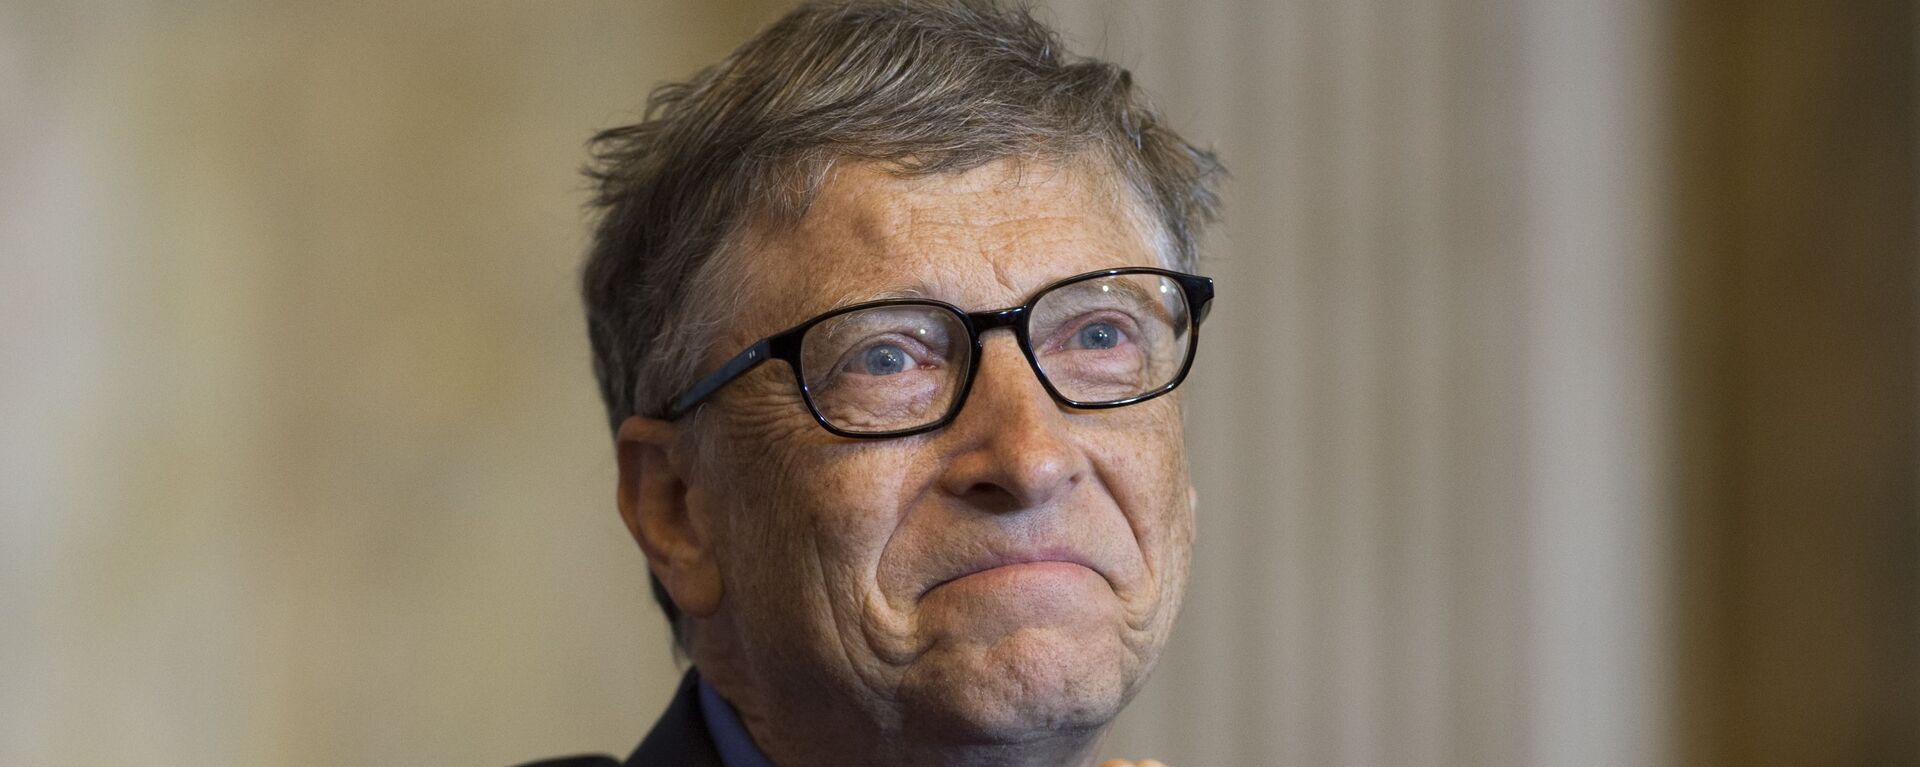 Nhà sáng lập công ty Microsoft Bill Gates - Sputnik Việt Nam, 1920, 25.02.2021